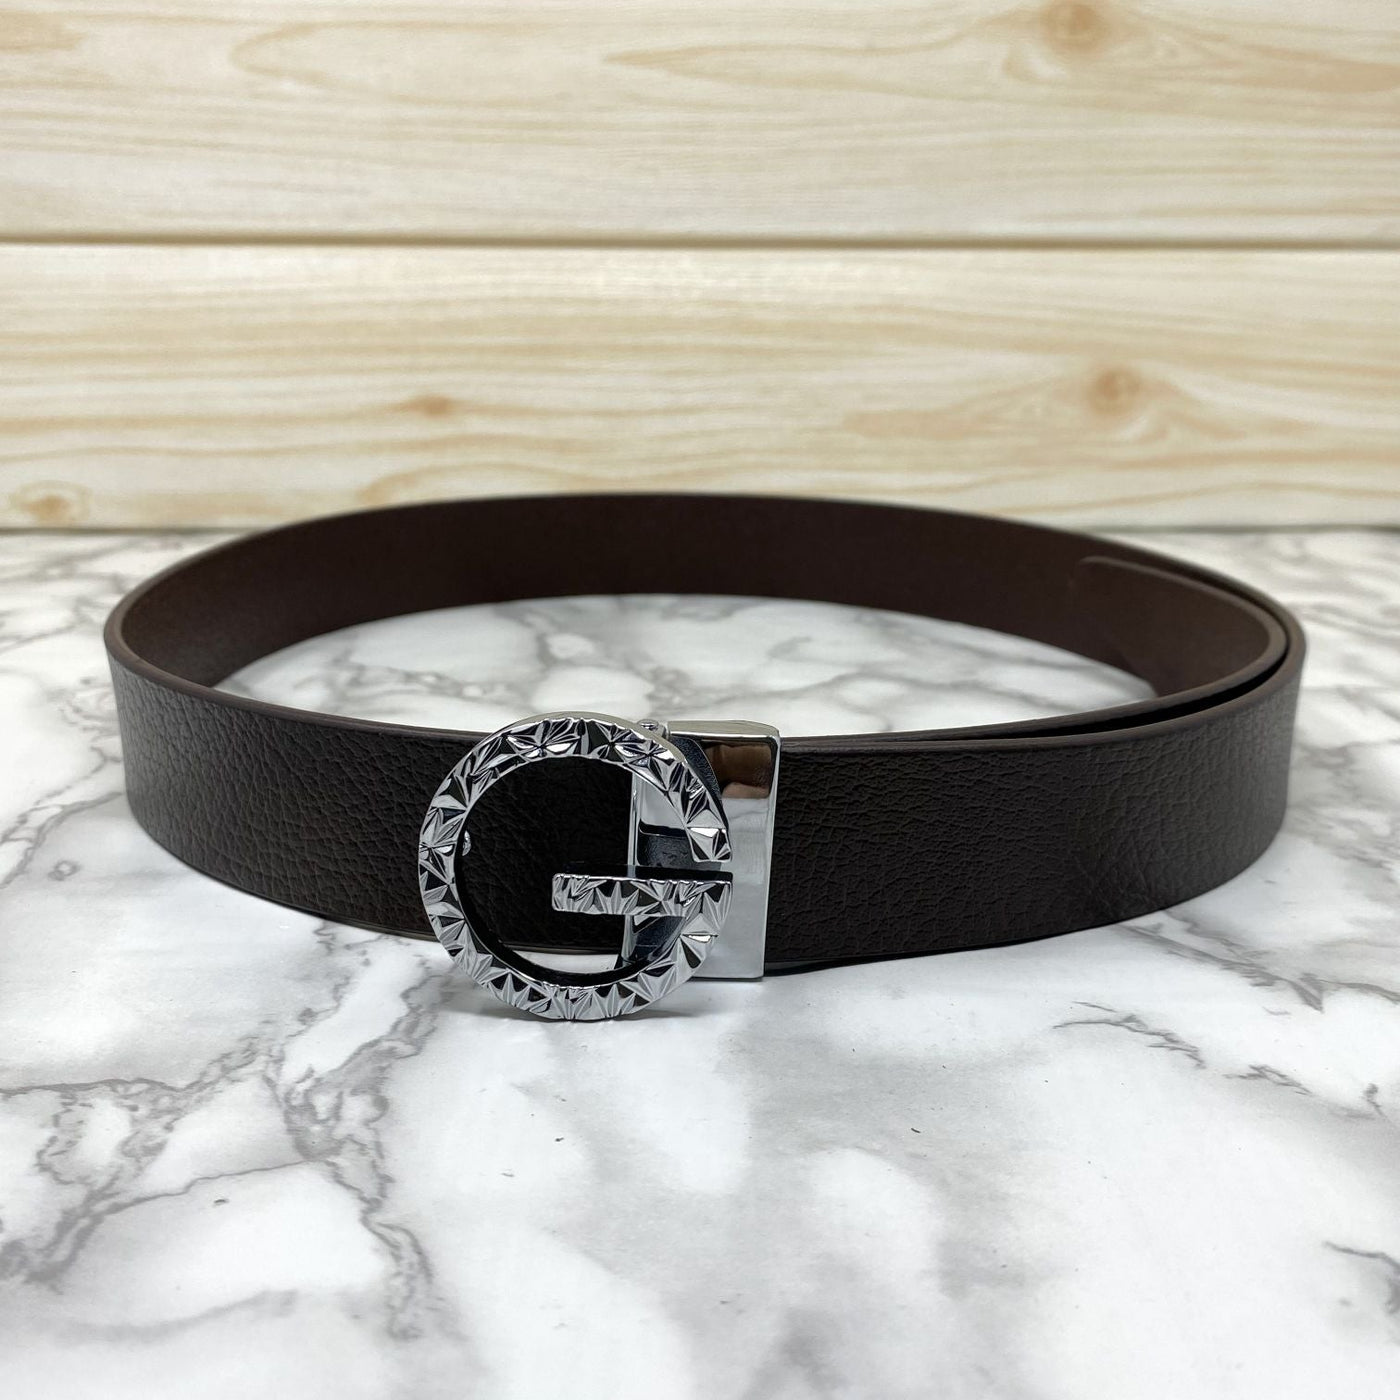 Premium Shiny G-letter Design Formal Leather Belt-UniqueandClassy